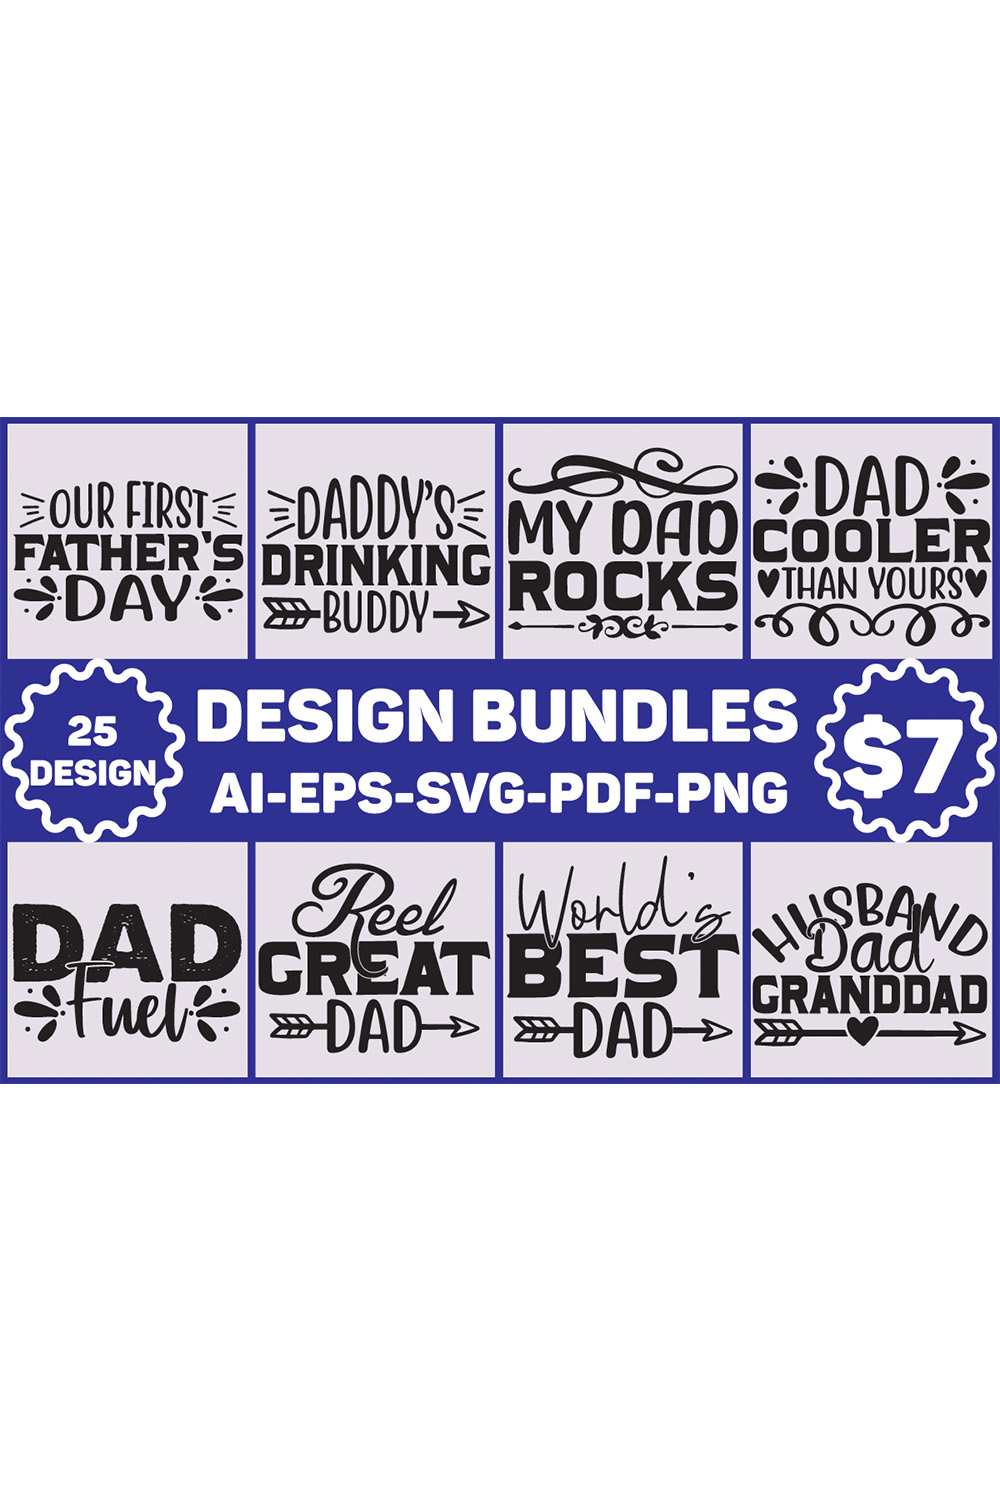 Dad SVG Designs Bundle pinterest image.